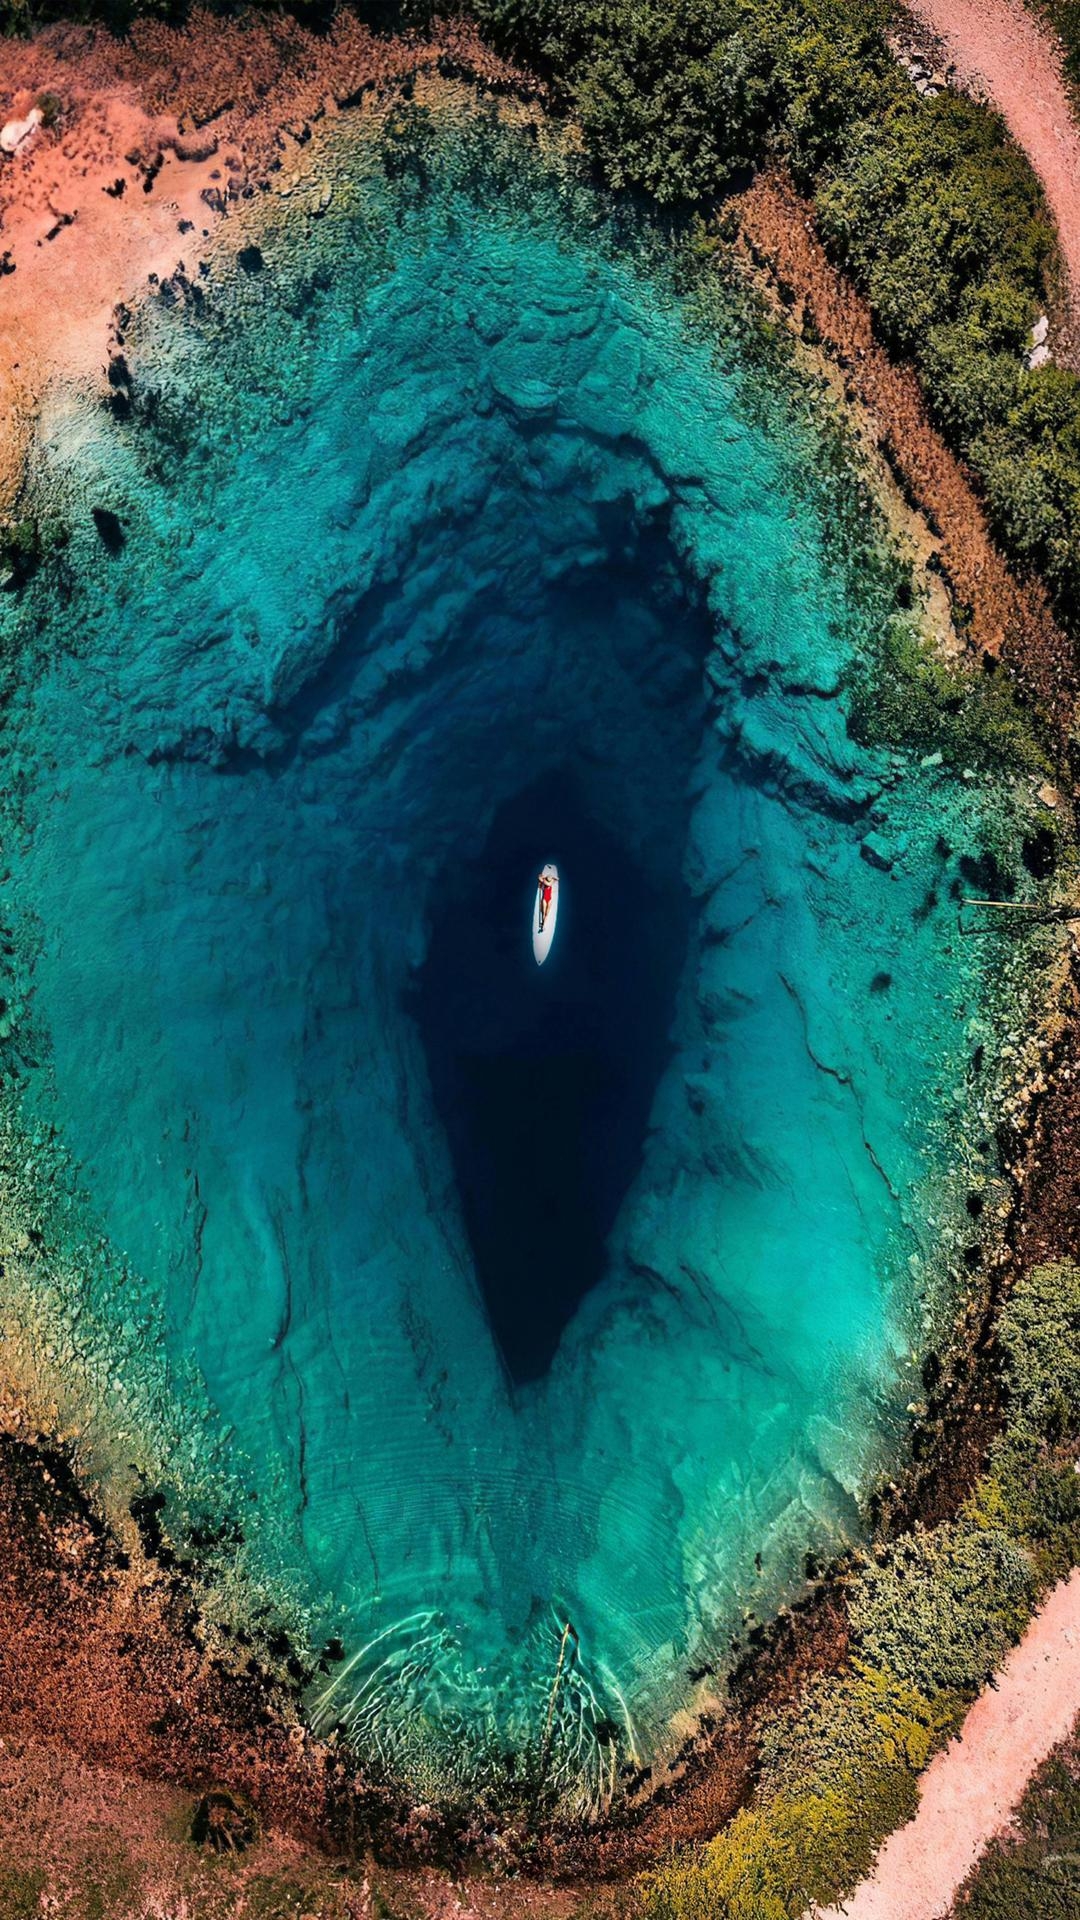 克罗地亚的“地球之眼”，是一个深邃幽蓝的喀斯特泉。#喀斯特地貌 #躺进万水千山里 #出境游好地方